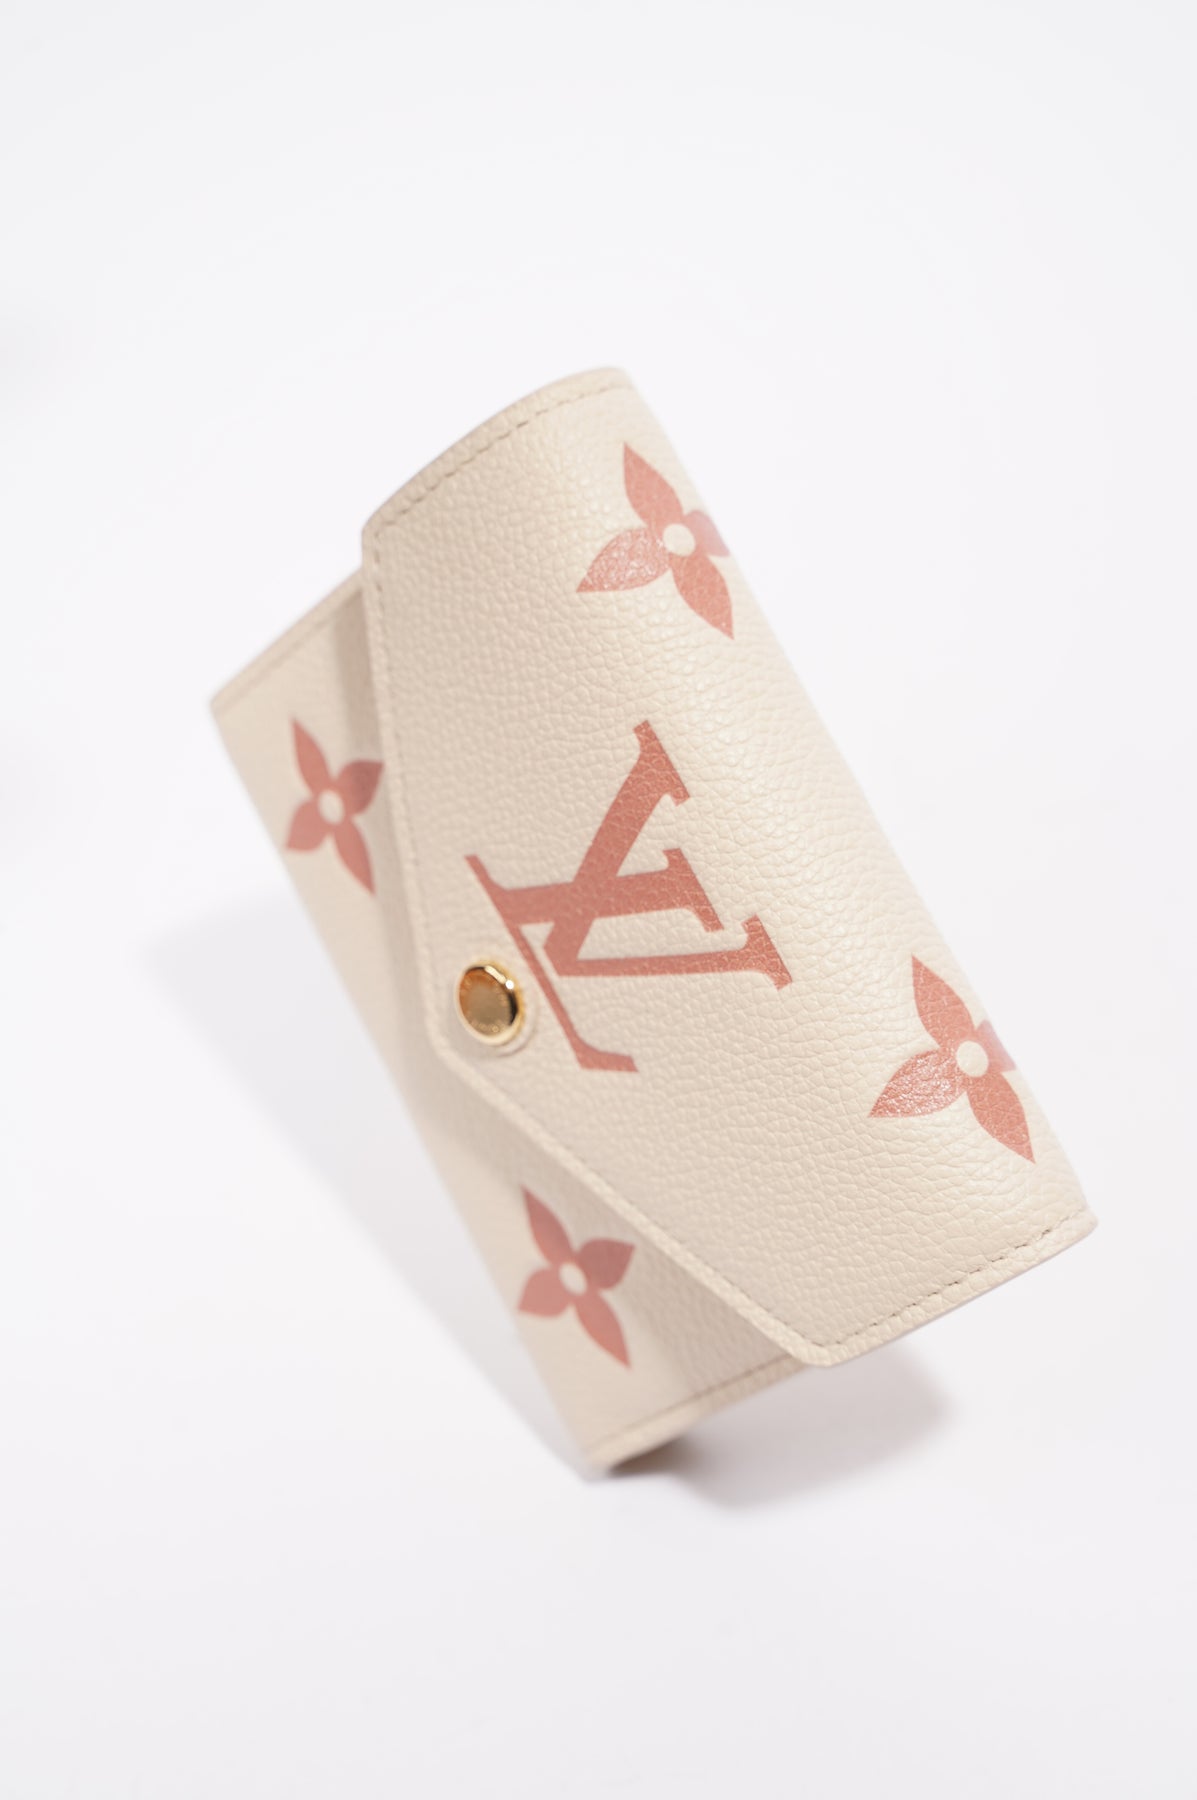 Victorine cloth wallet Louis Vuitton Beige in Cloth - 34652543